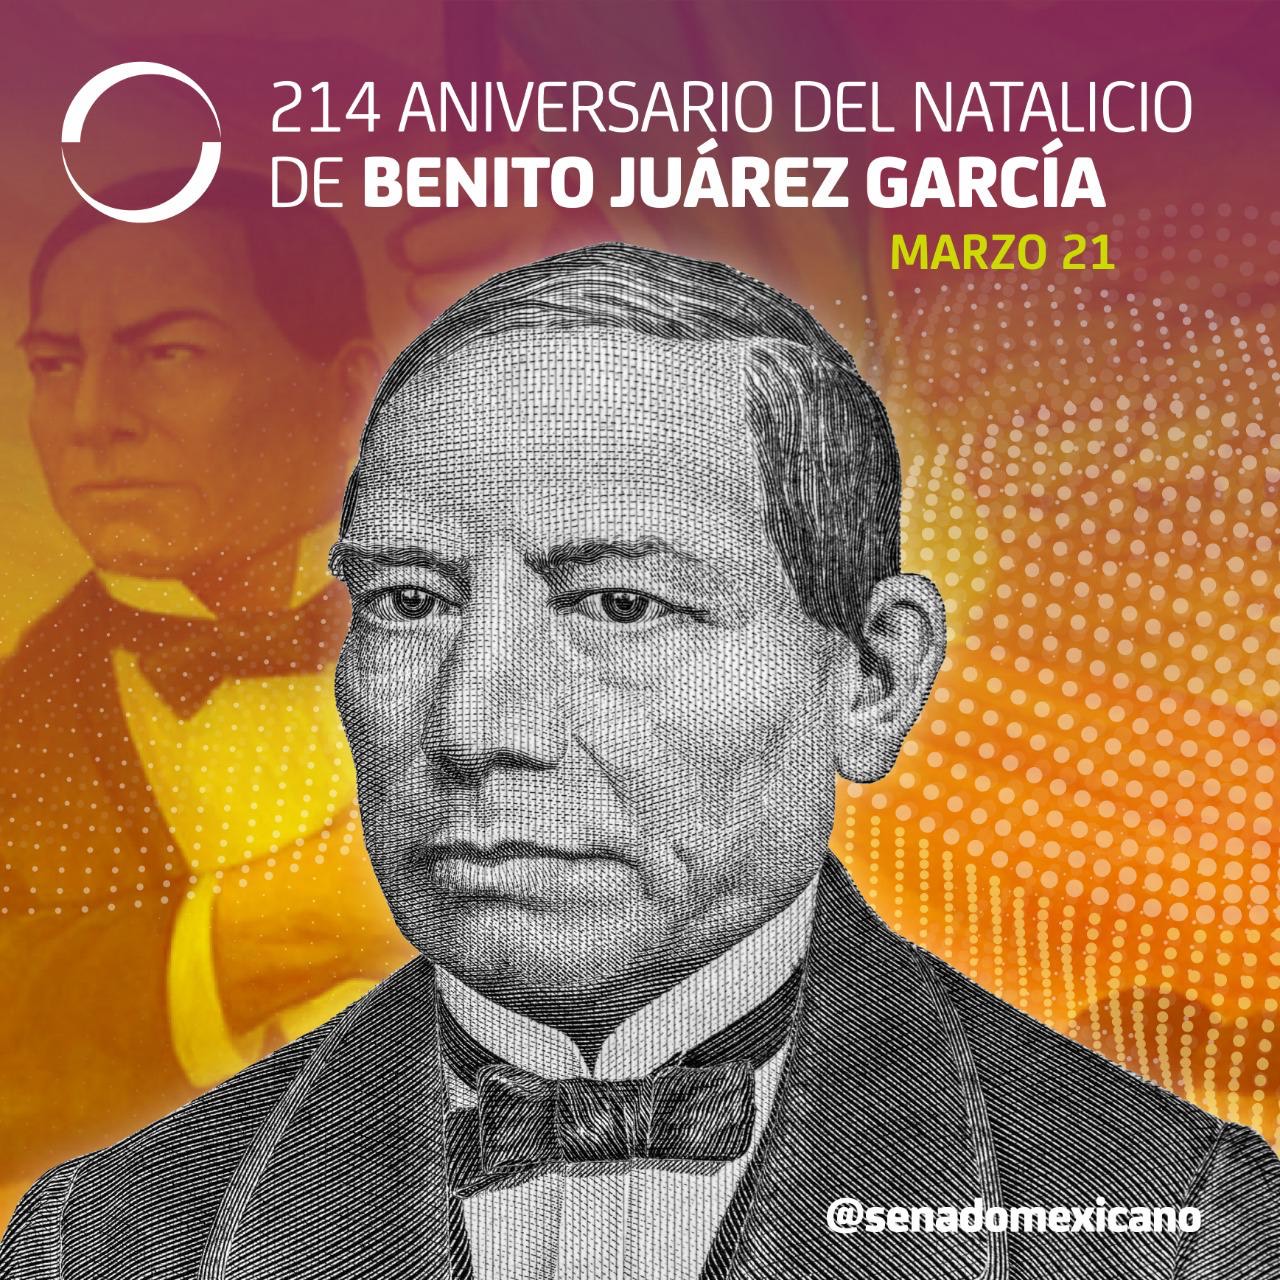 214 Aniversario del Natalicio de Benito Juárez García